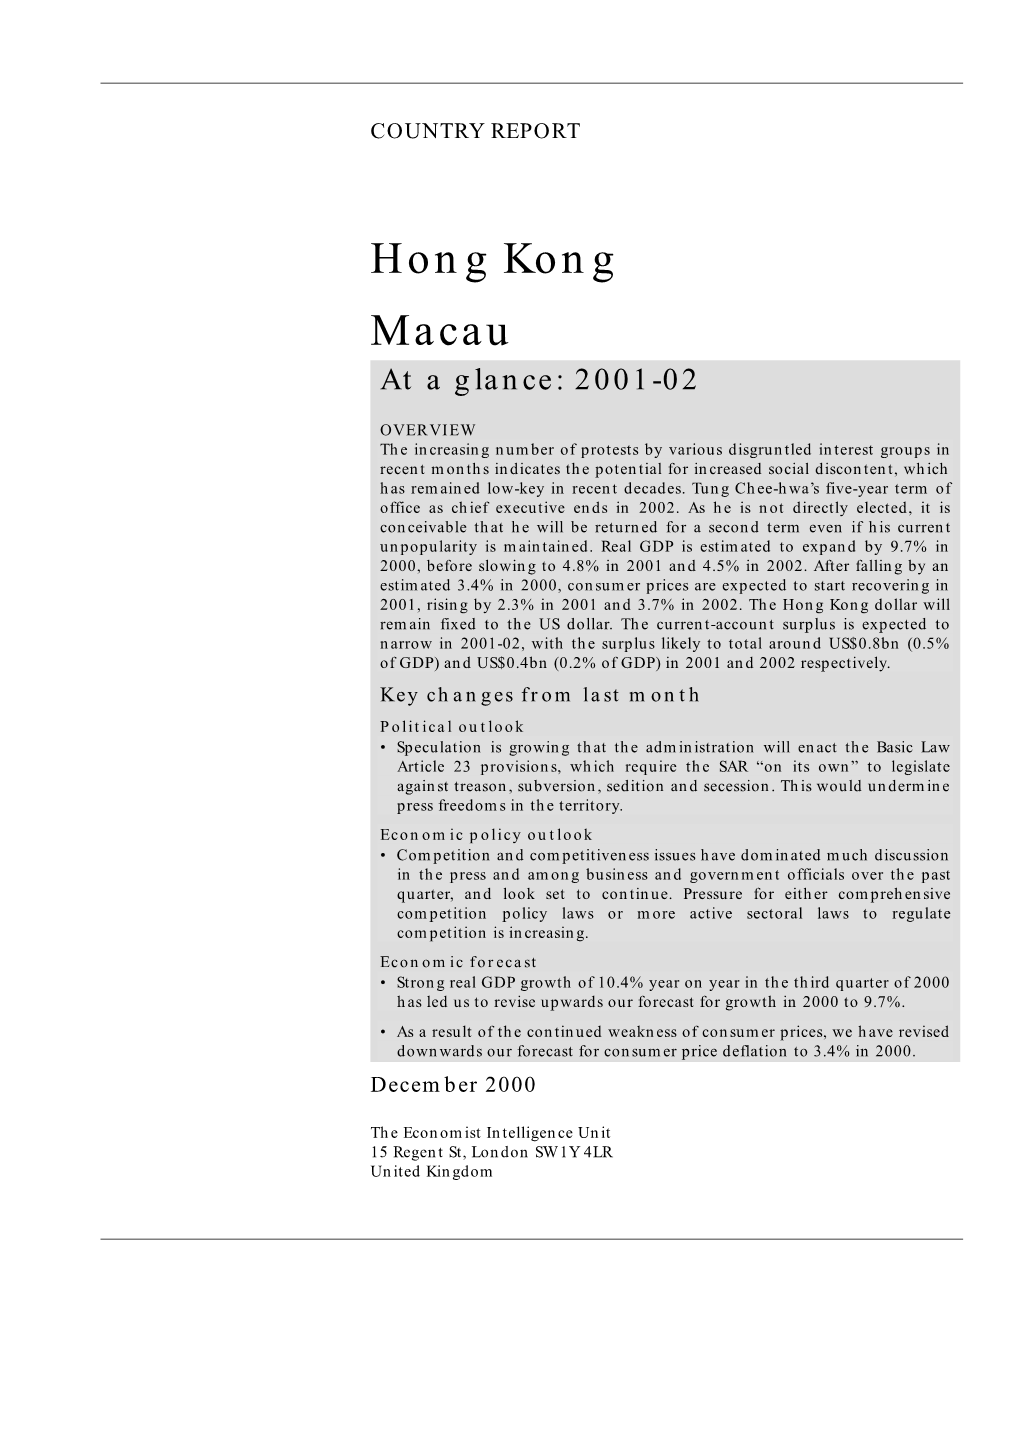 Hong Kong Macau at a Glance: 2001-02